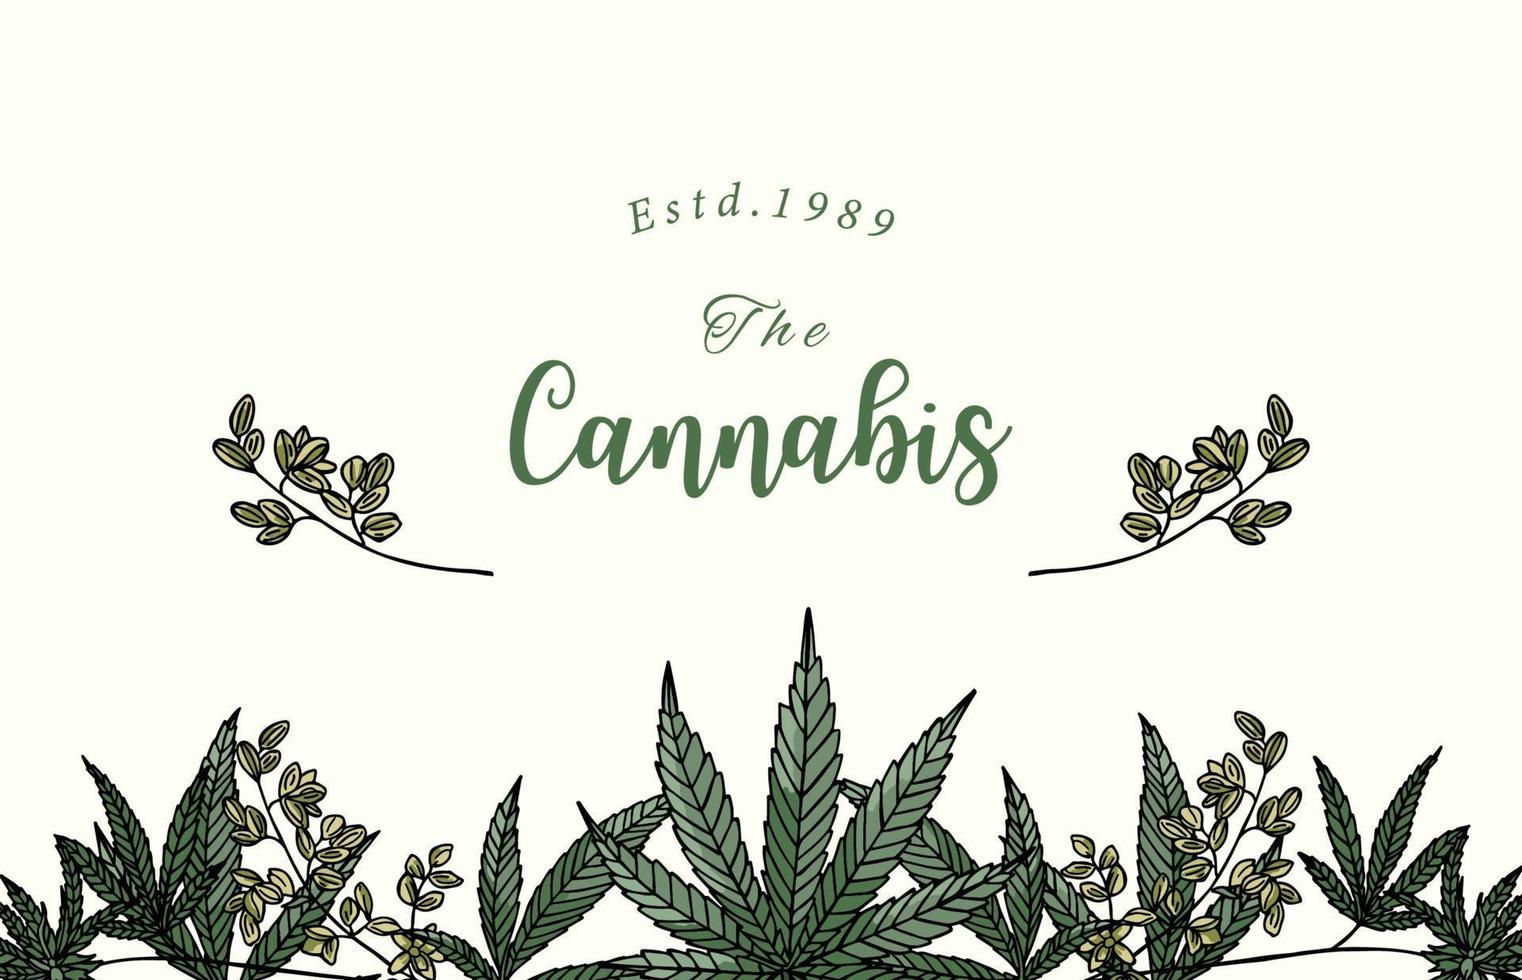 sammlung von cannabishintergrund mit green.editable vektorillustration für website, einladung, postkarte und aufkleber vektor